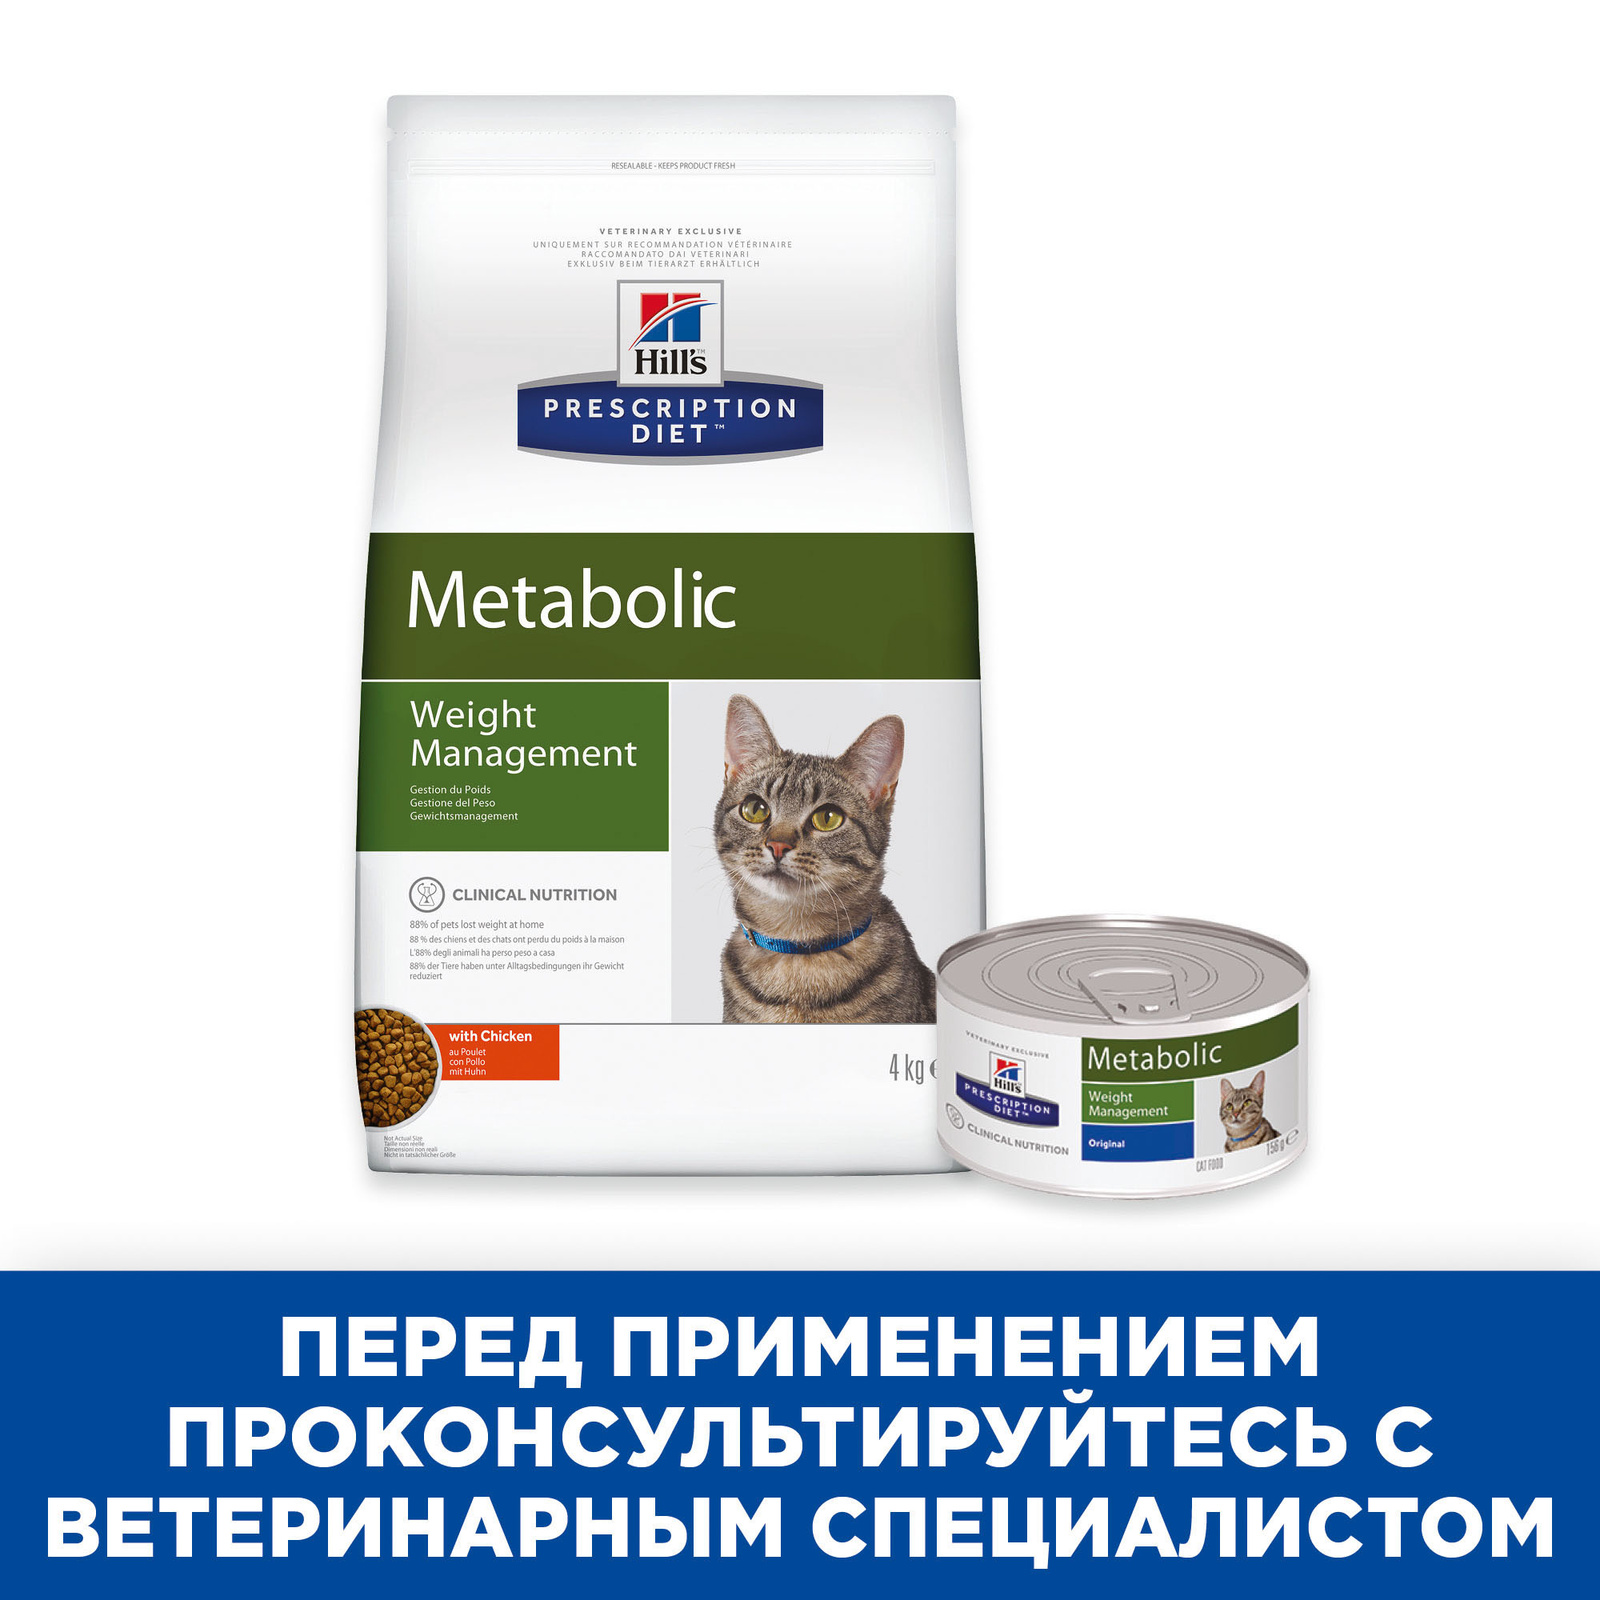 Metabolic сухой диетический для кошек, способствует снижению и контролю веса, с курицей (1,5 кг) Hill's Prescription Diet Metabolic сухой диетический для кошек, способствует снижению и контролю веса, с курицей (1,5 кг) - фото 7